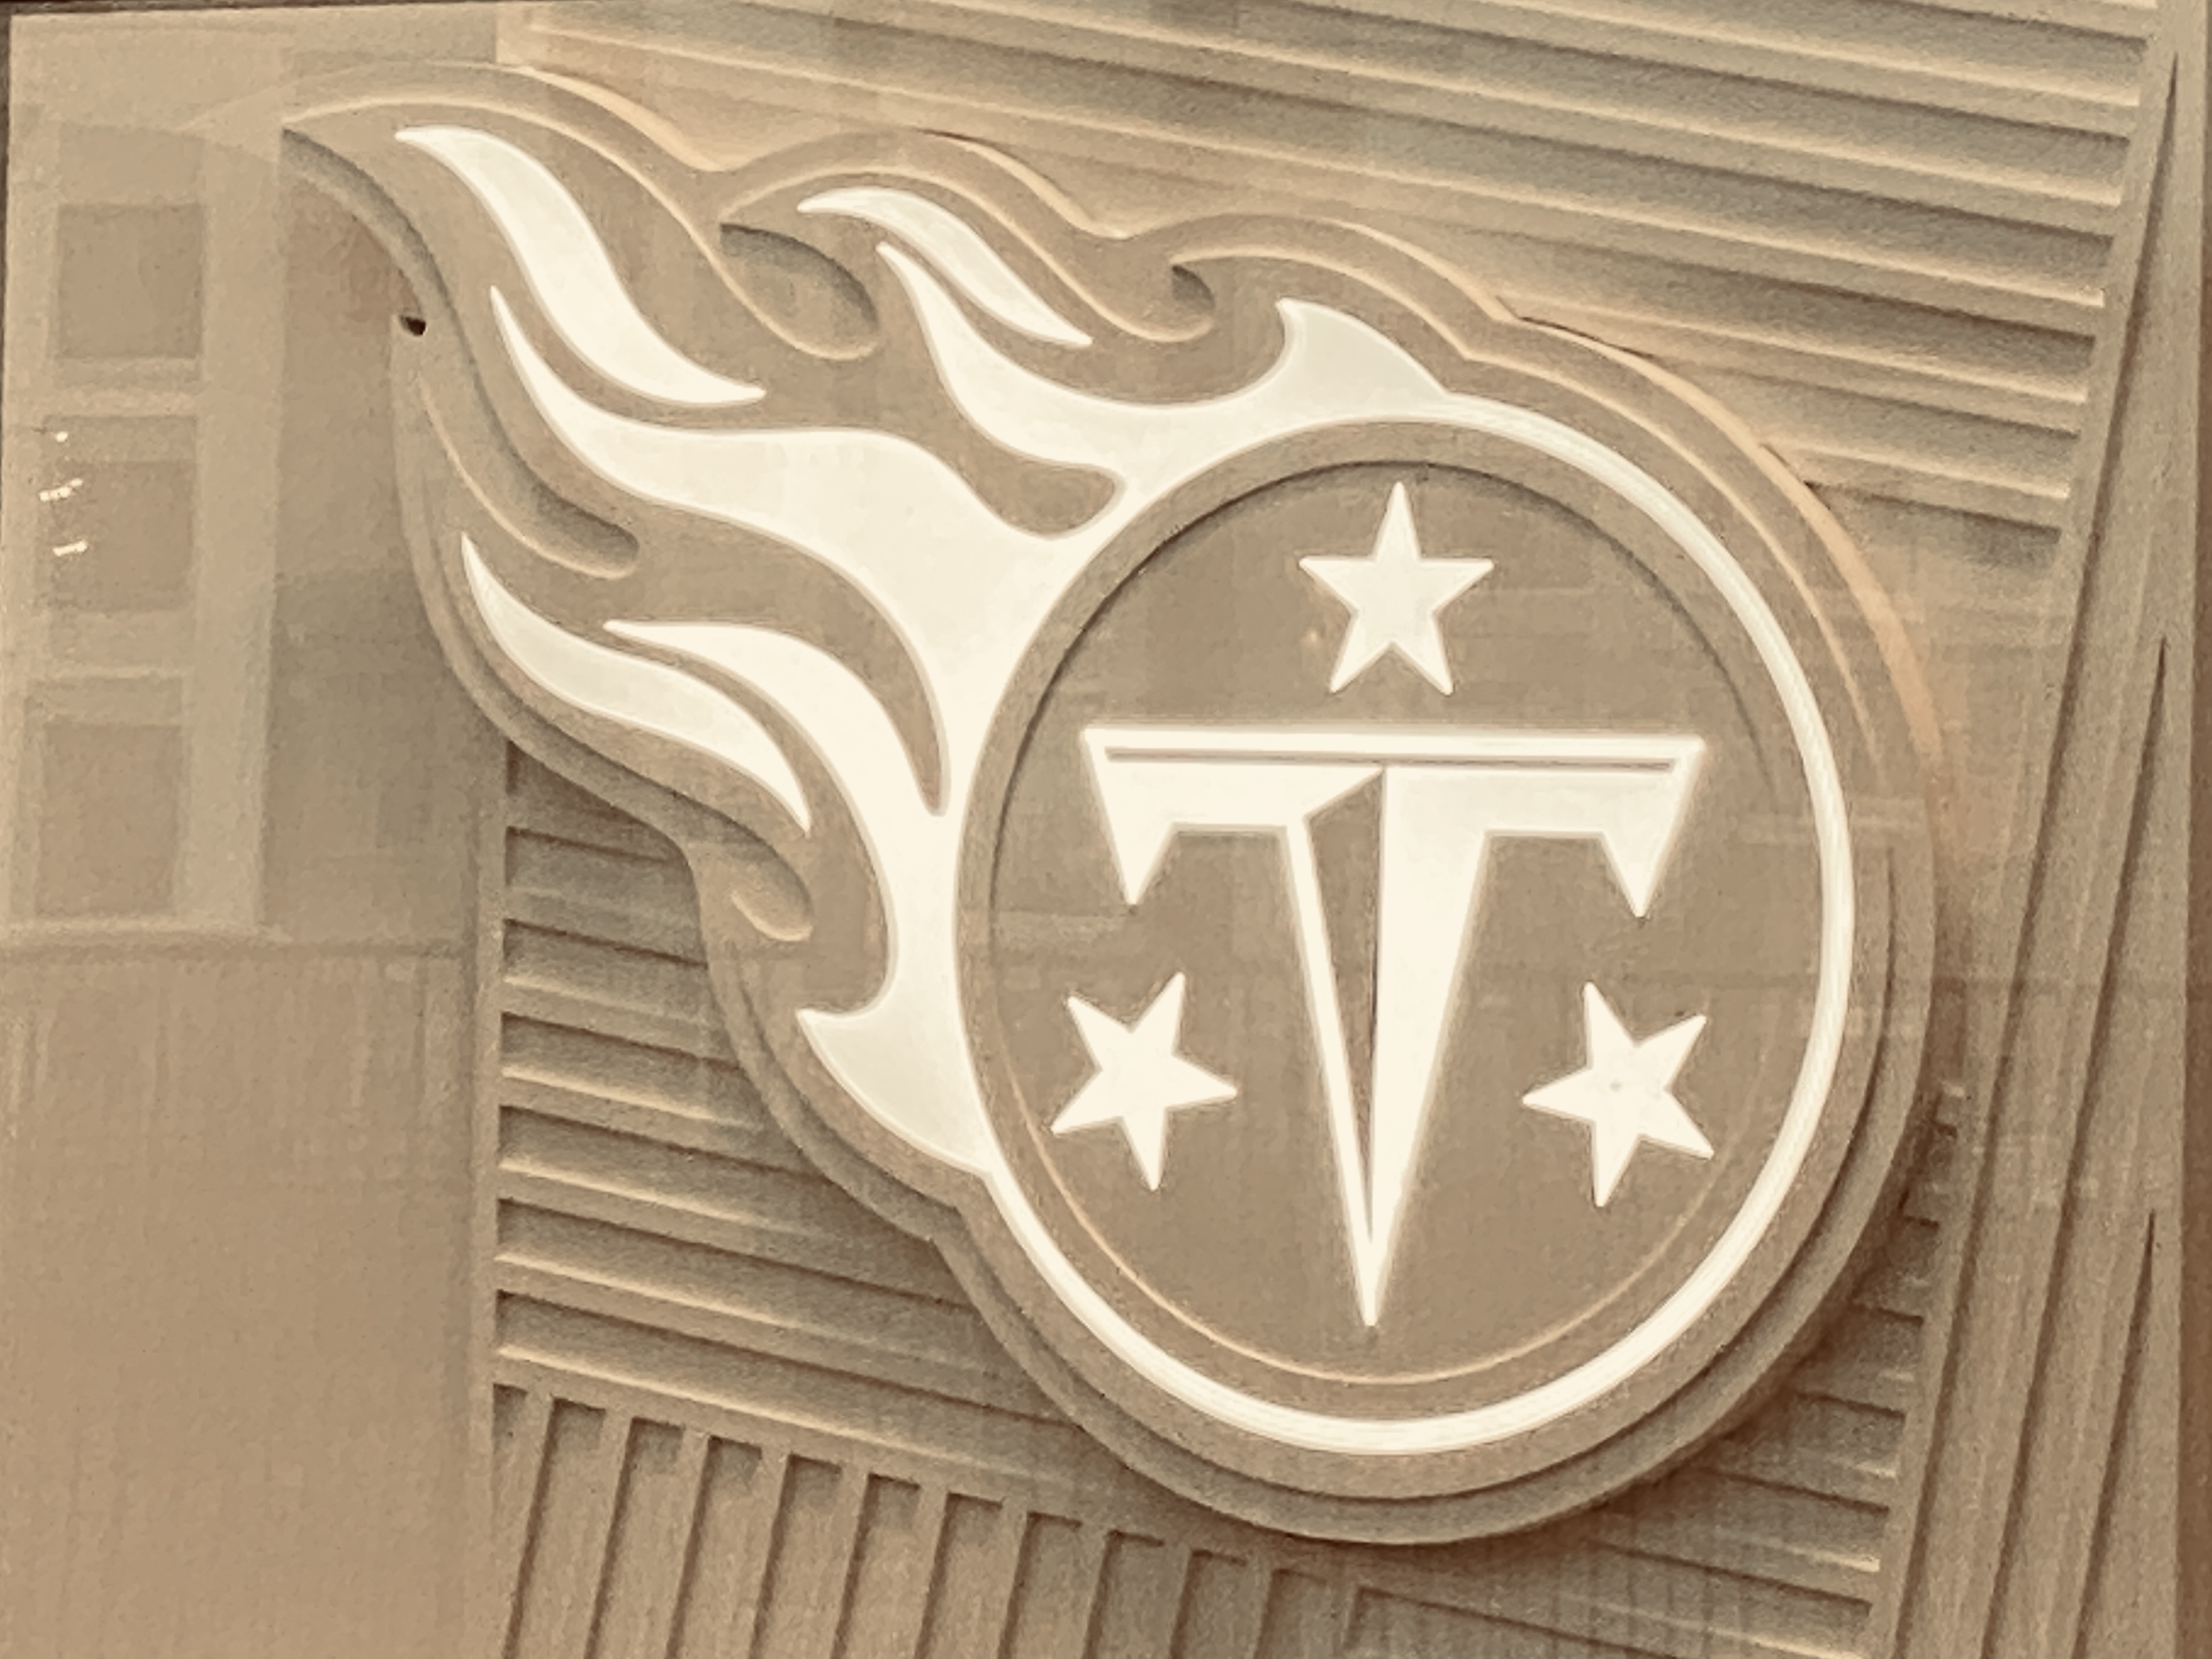 Titans Logo